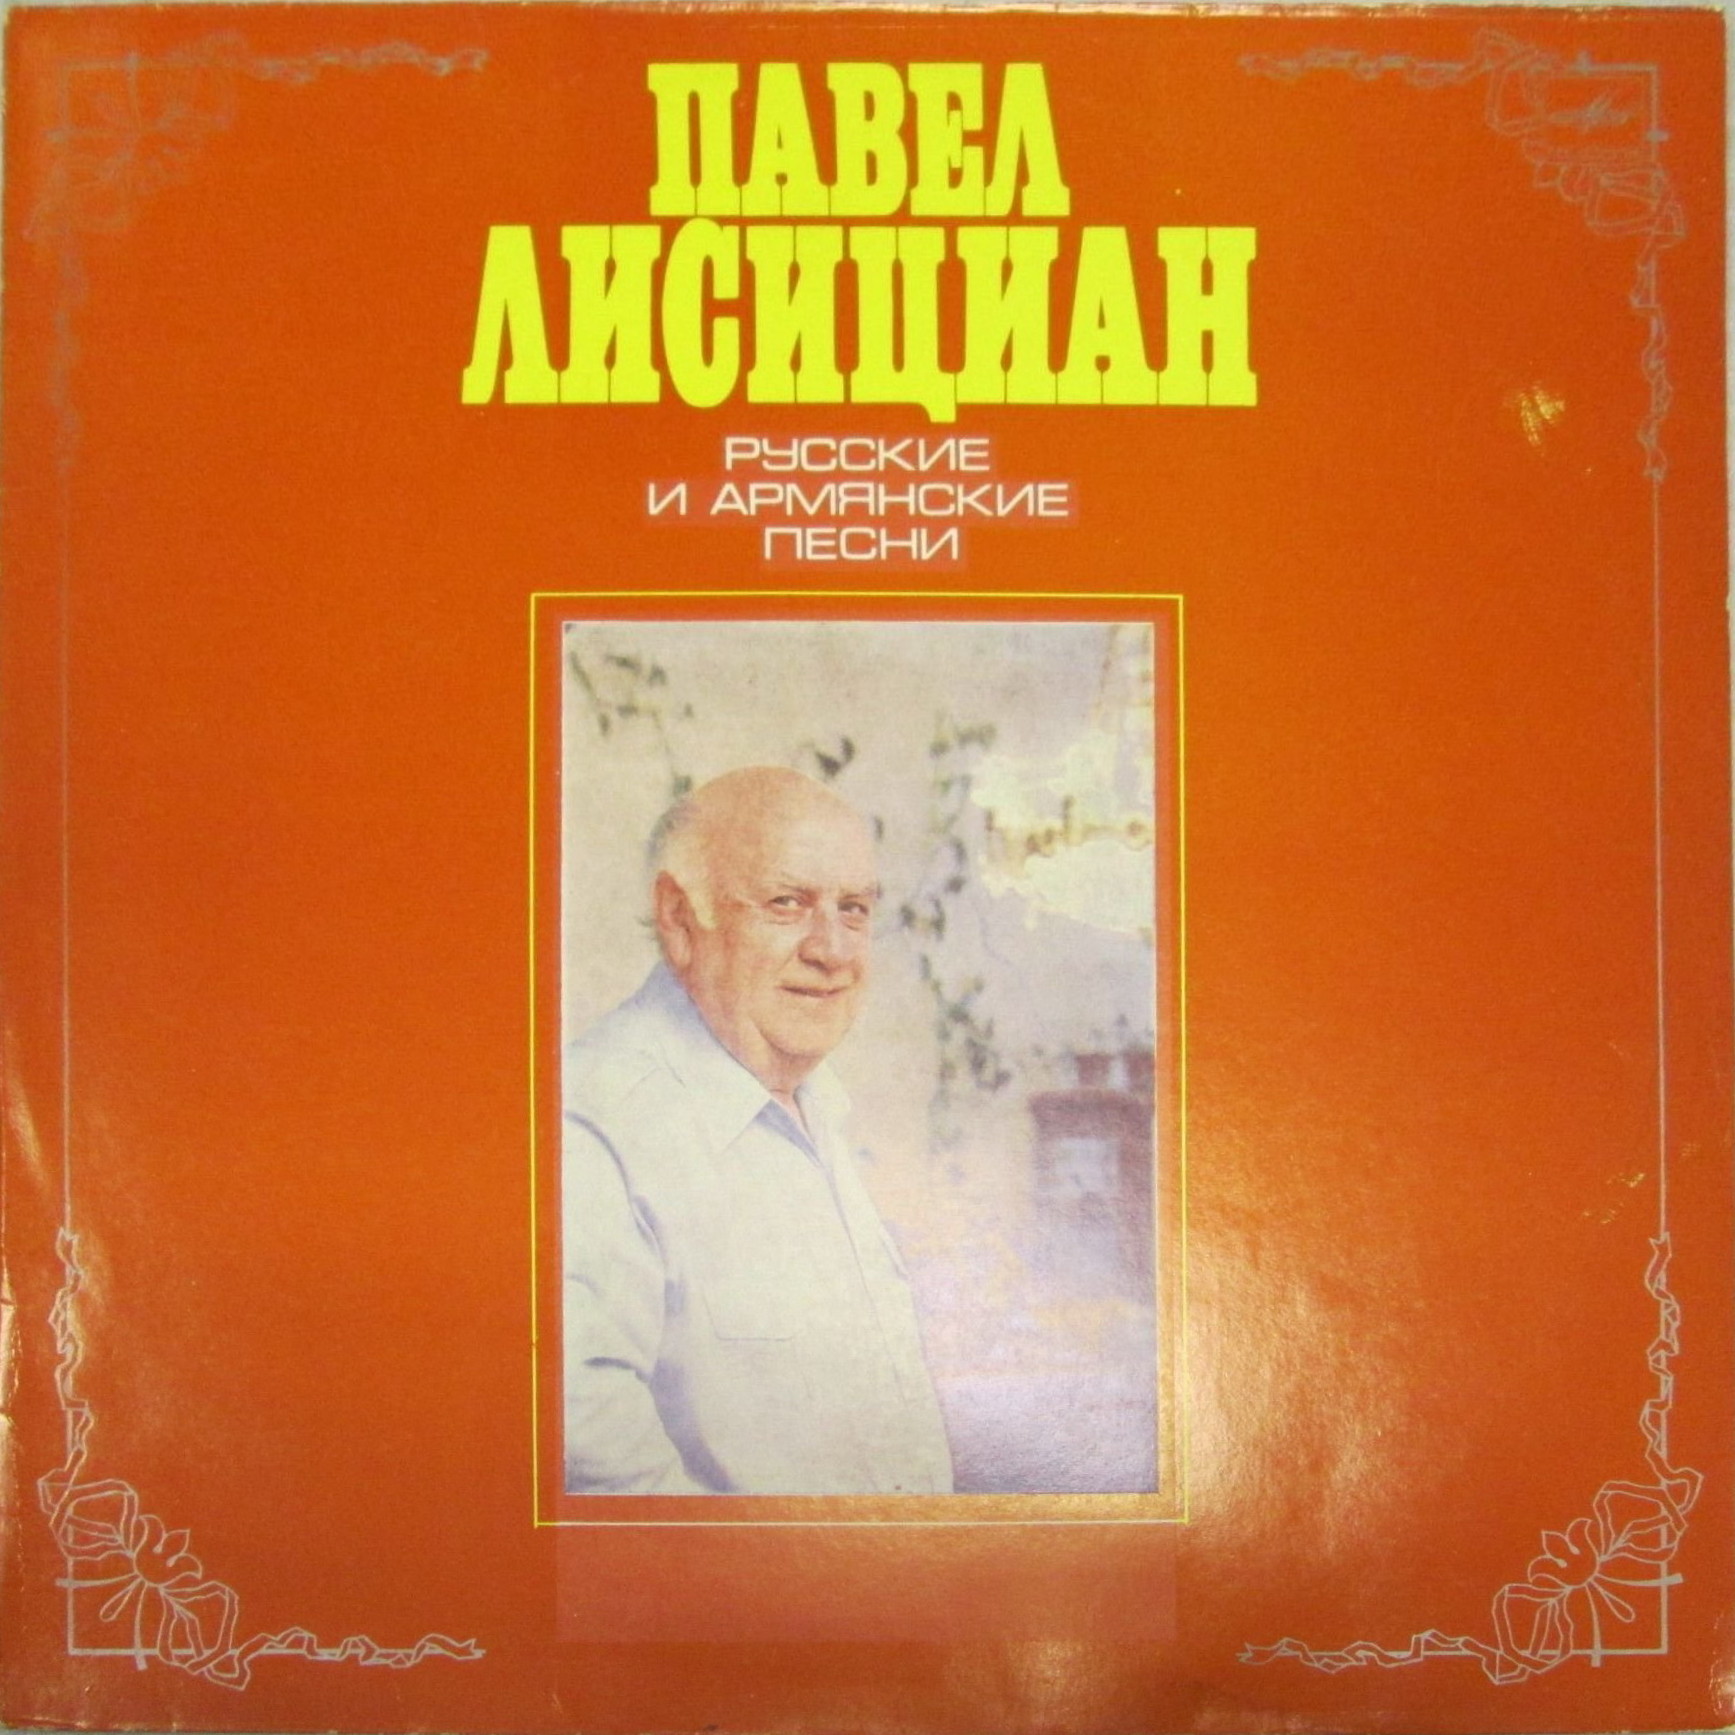 Павел Лисициан (баритон). Русские и армянские песни